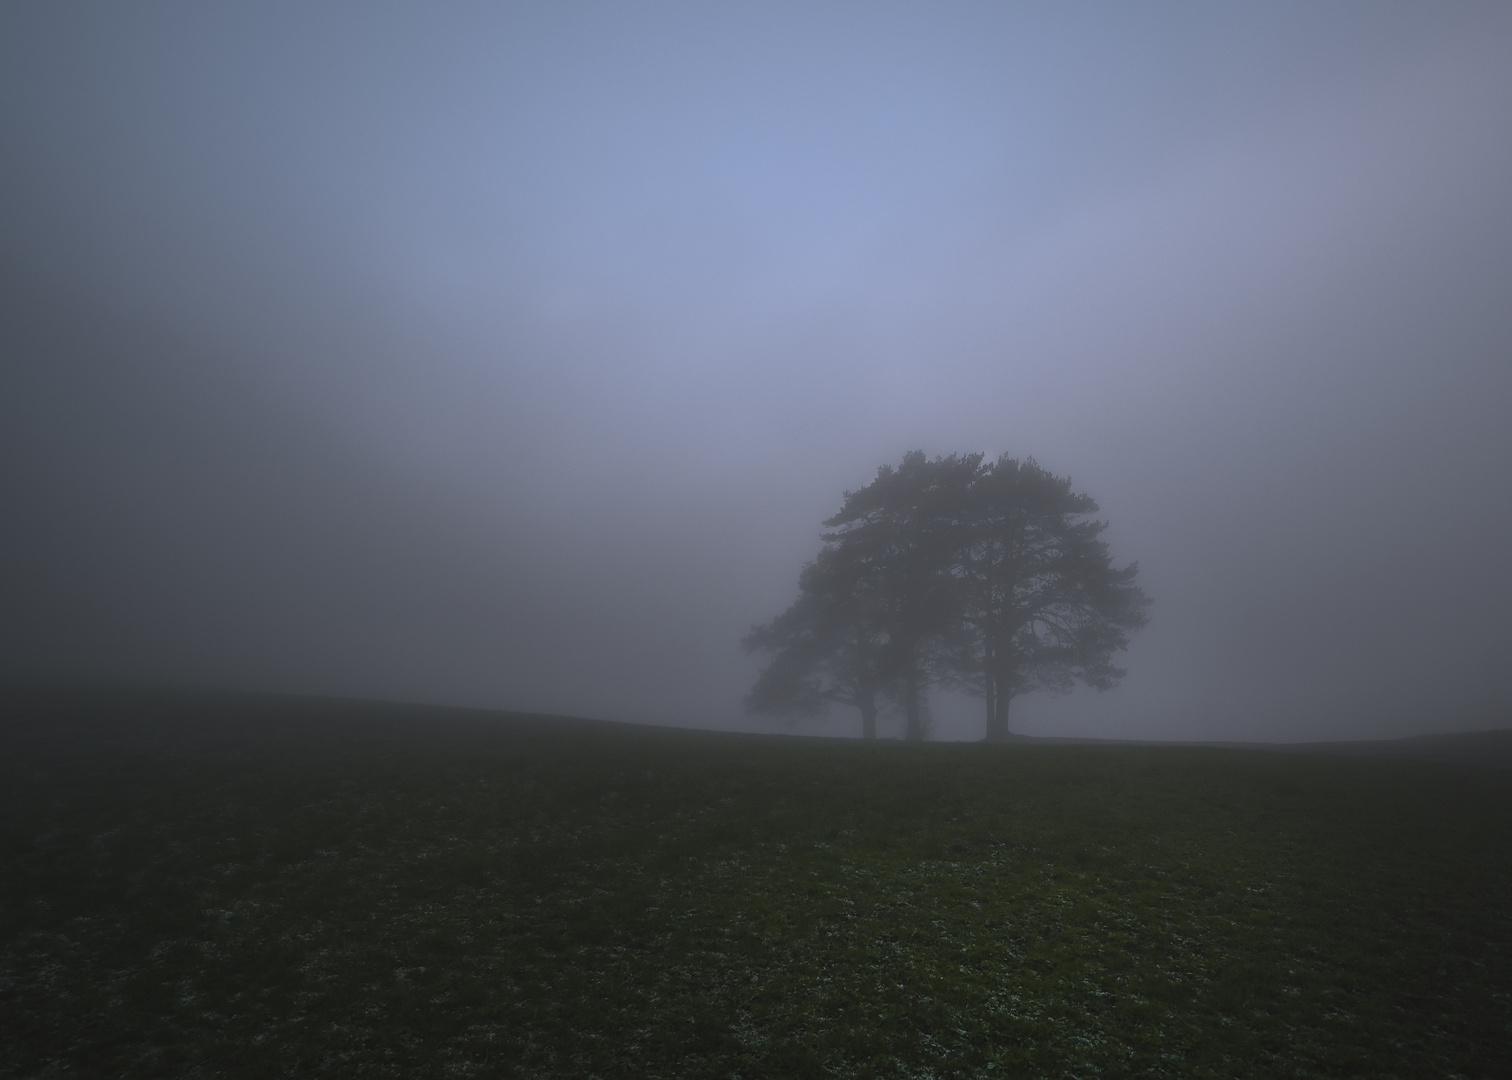 Baum auf Hügelkante im Morgennebel